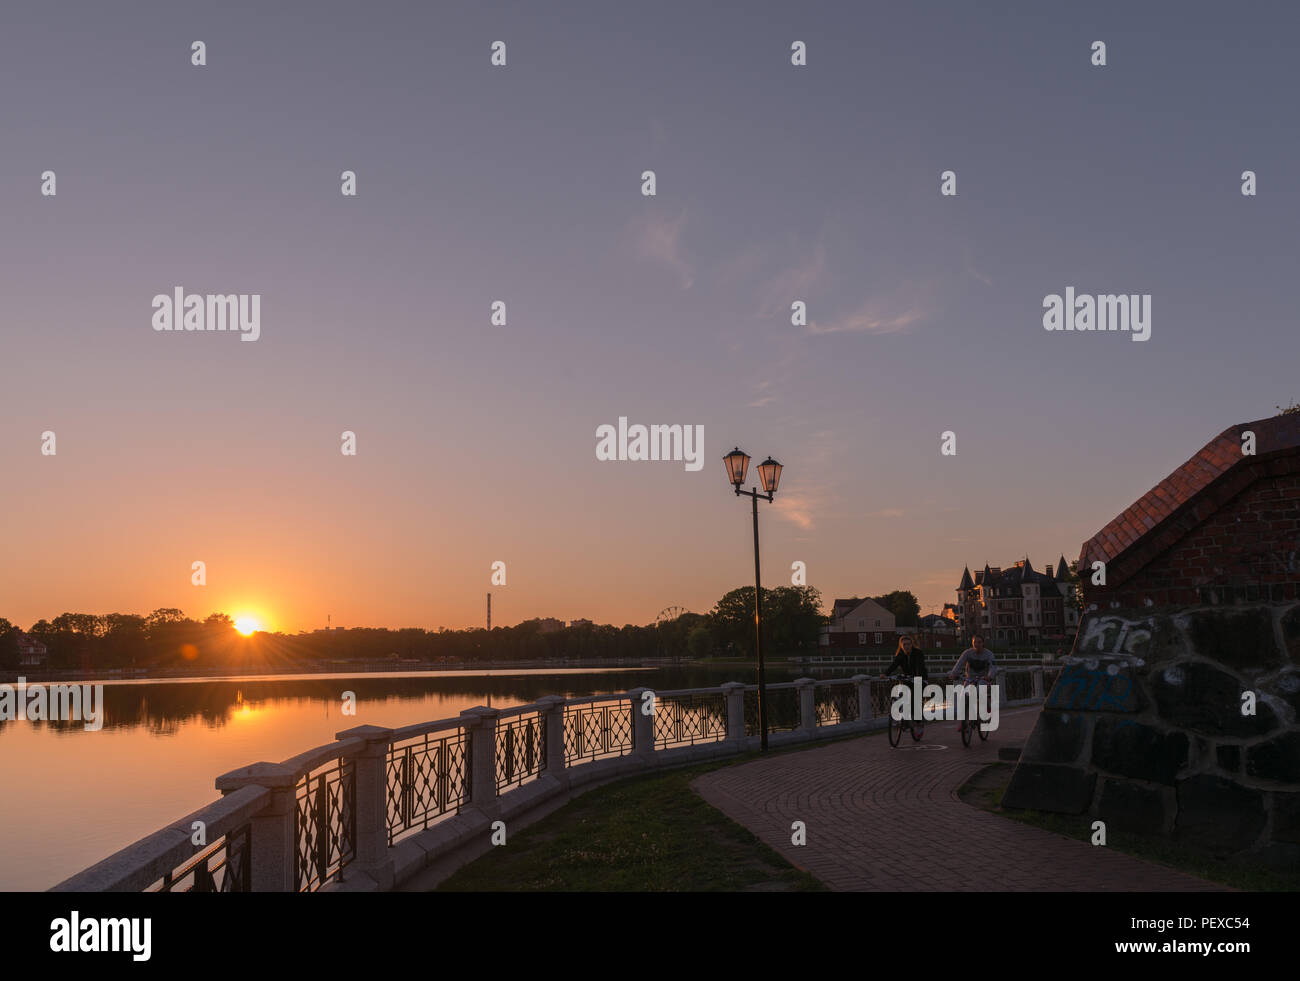 Passeggiata lungo il Obeteich o Lago Superiore, la luce della sera, le ragazze in bici, Kaliningrad, l'oblast di Kaliningrad, Russia Foto Stock